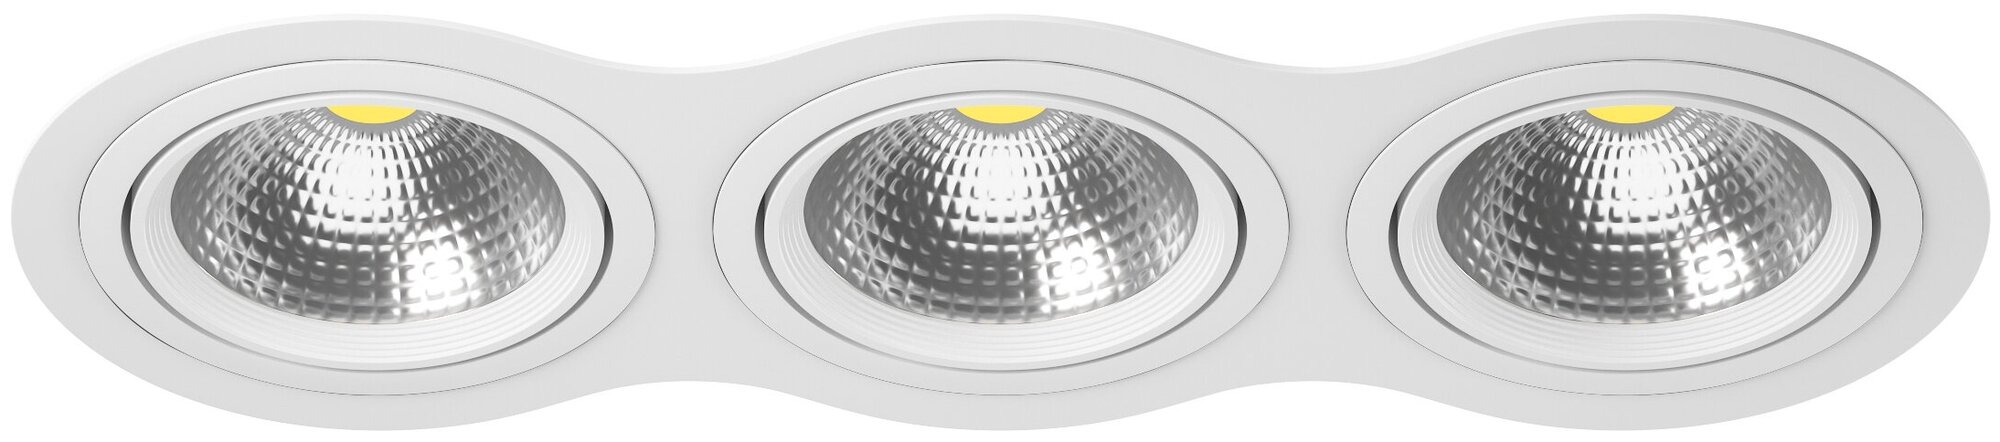 Точечный светильник встроенный белый Lightstar Intero 111 i936060606